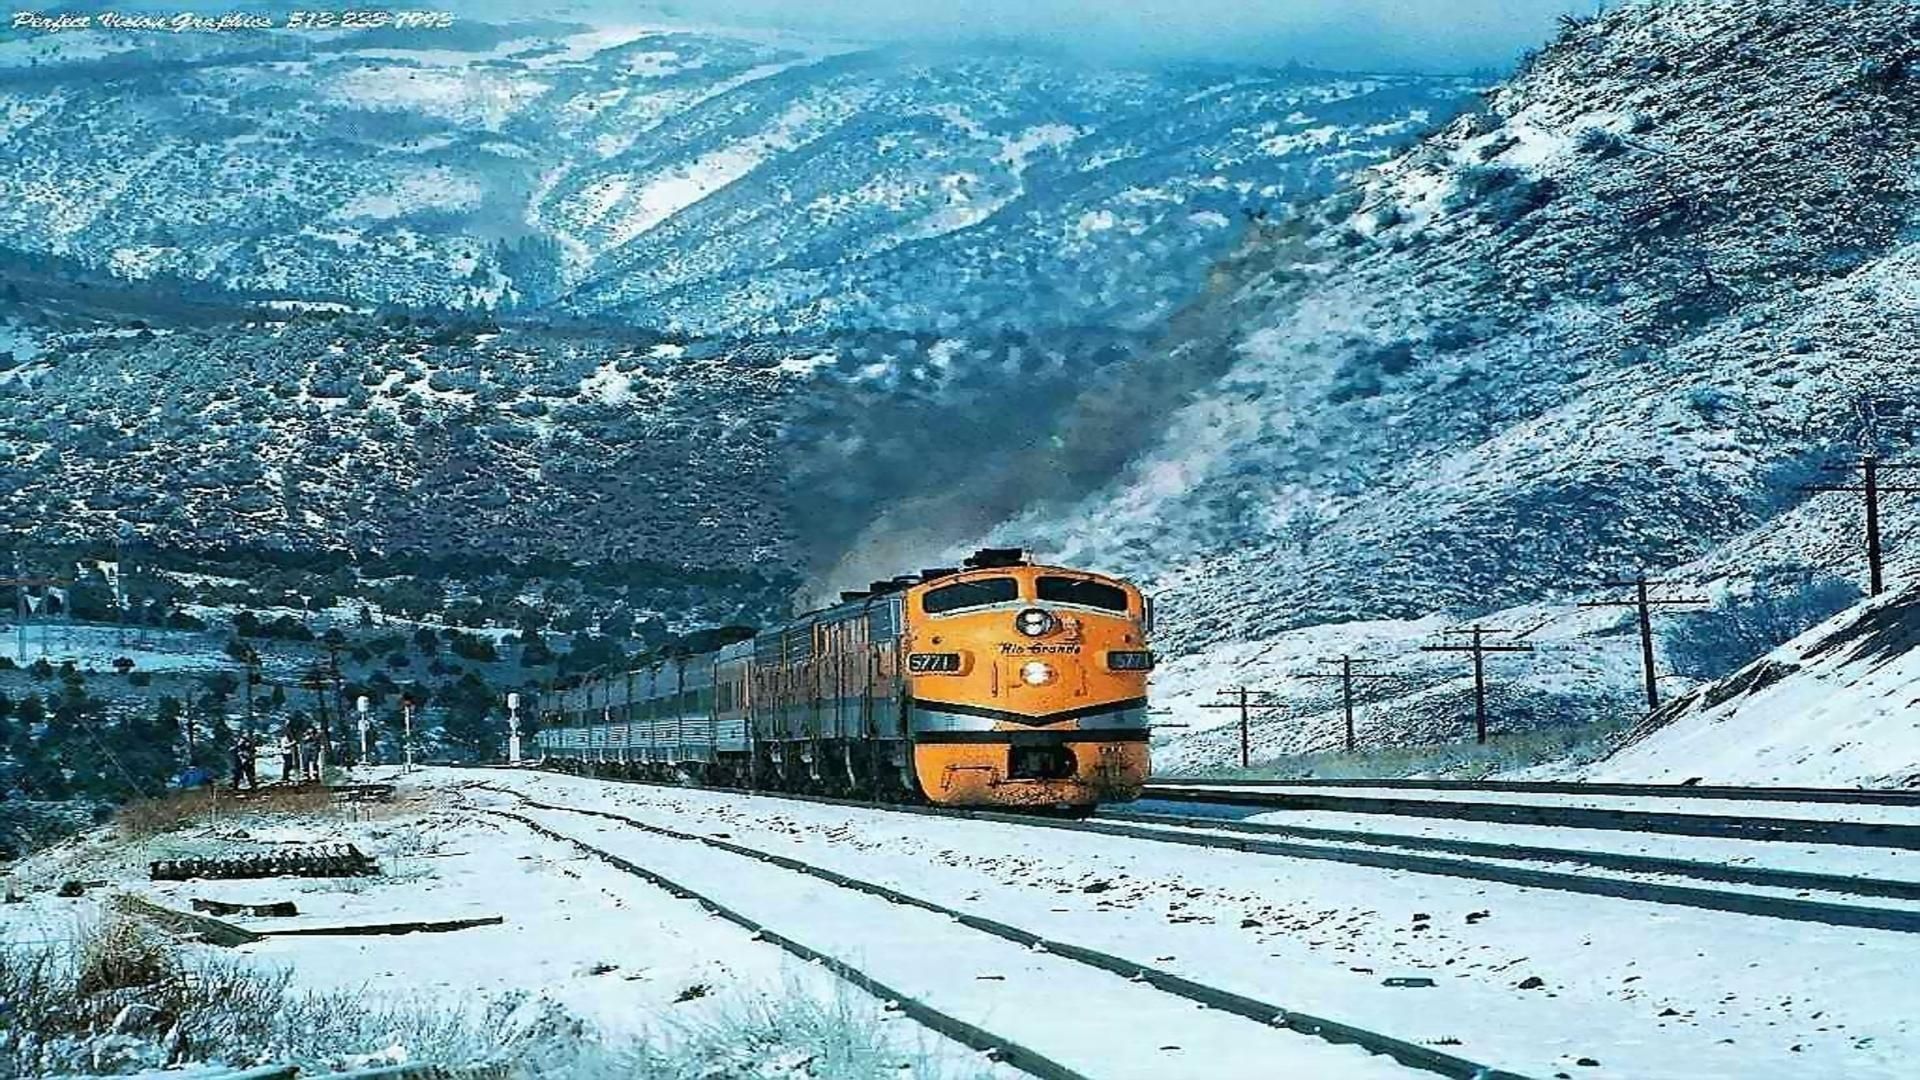 Train in mountains at winter. Train picture, Train wallpaper, Train